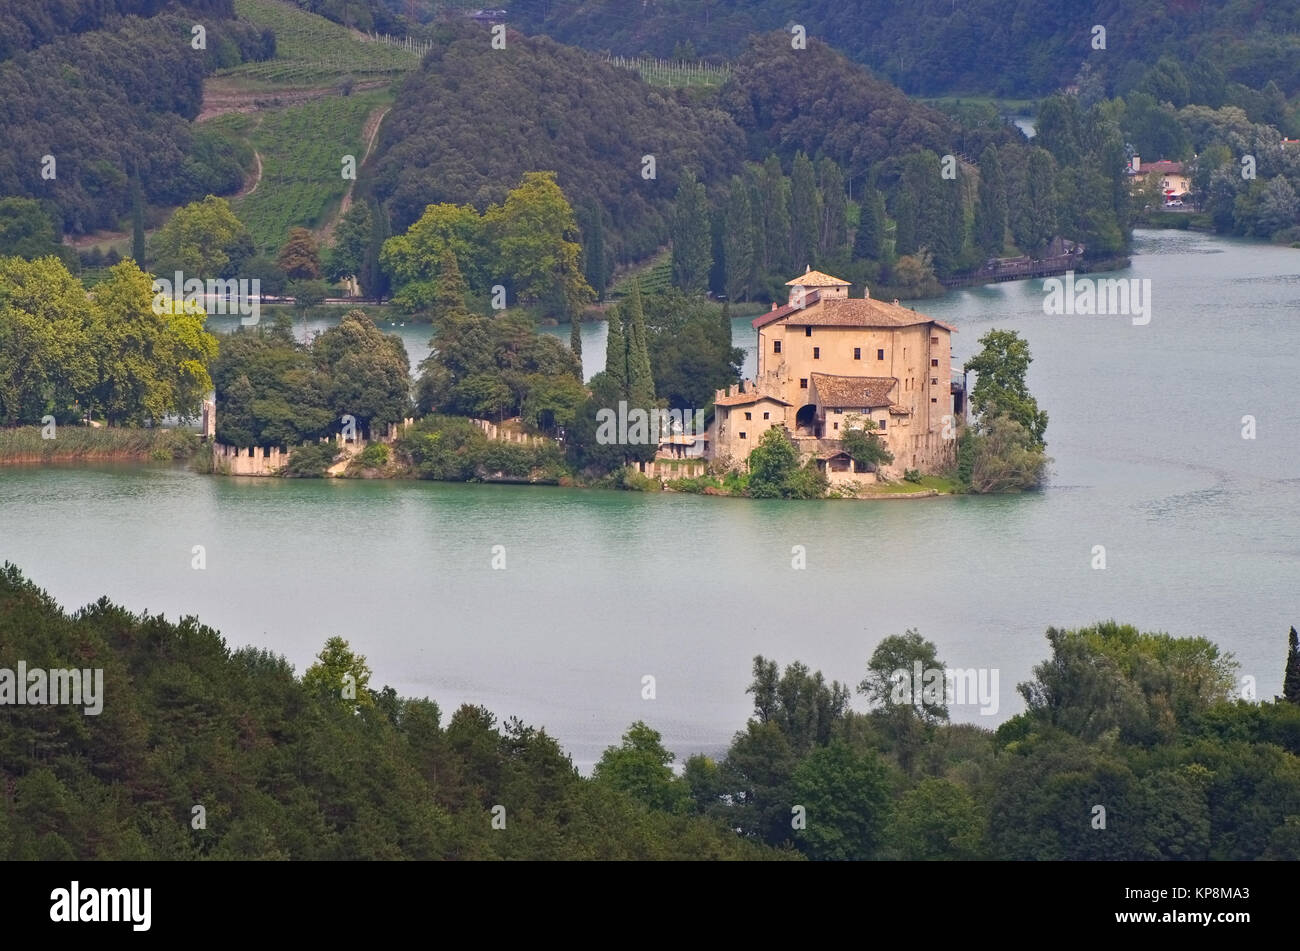 Castel Toblino im Trentino, Oberitalien - Castel Toblino in Trentino, Italia settentrionale Foto Stock